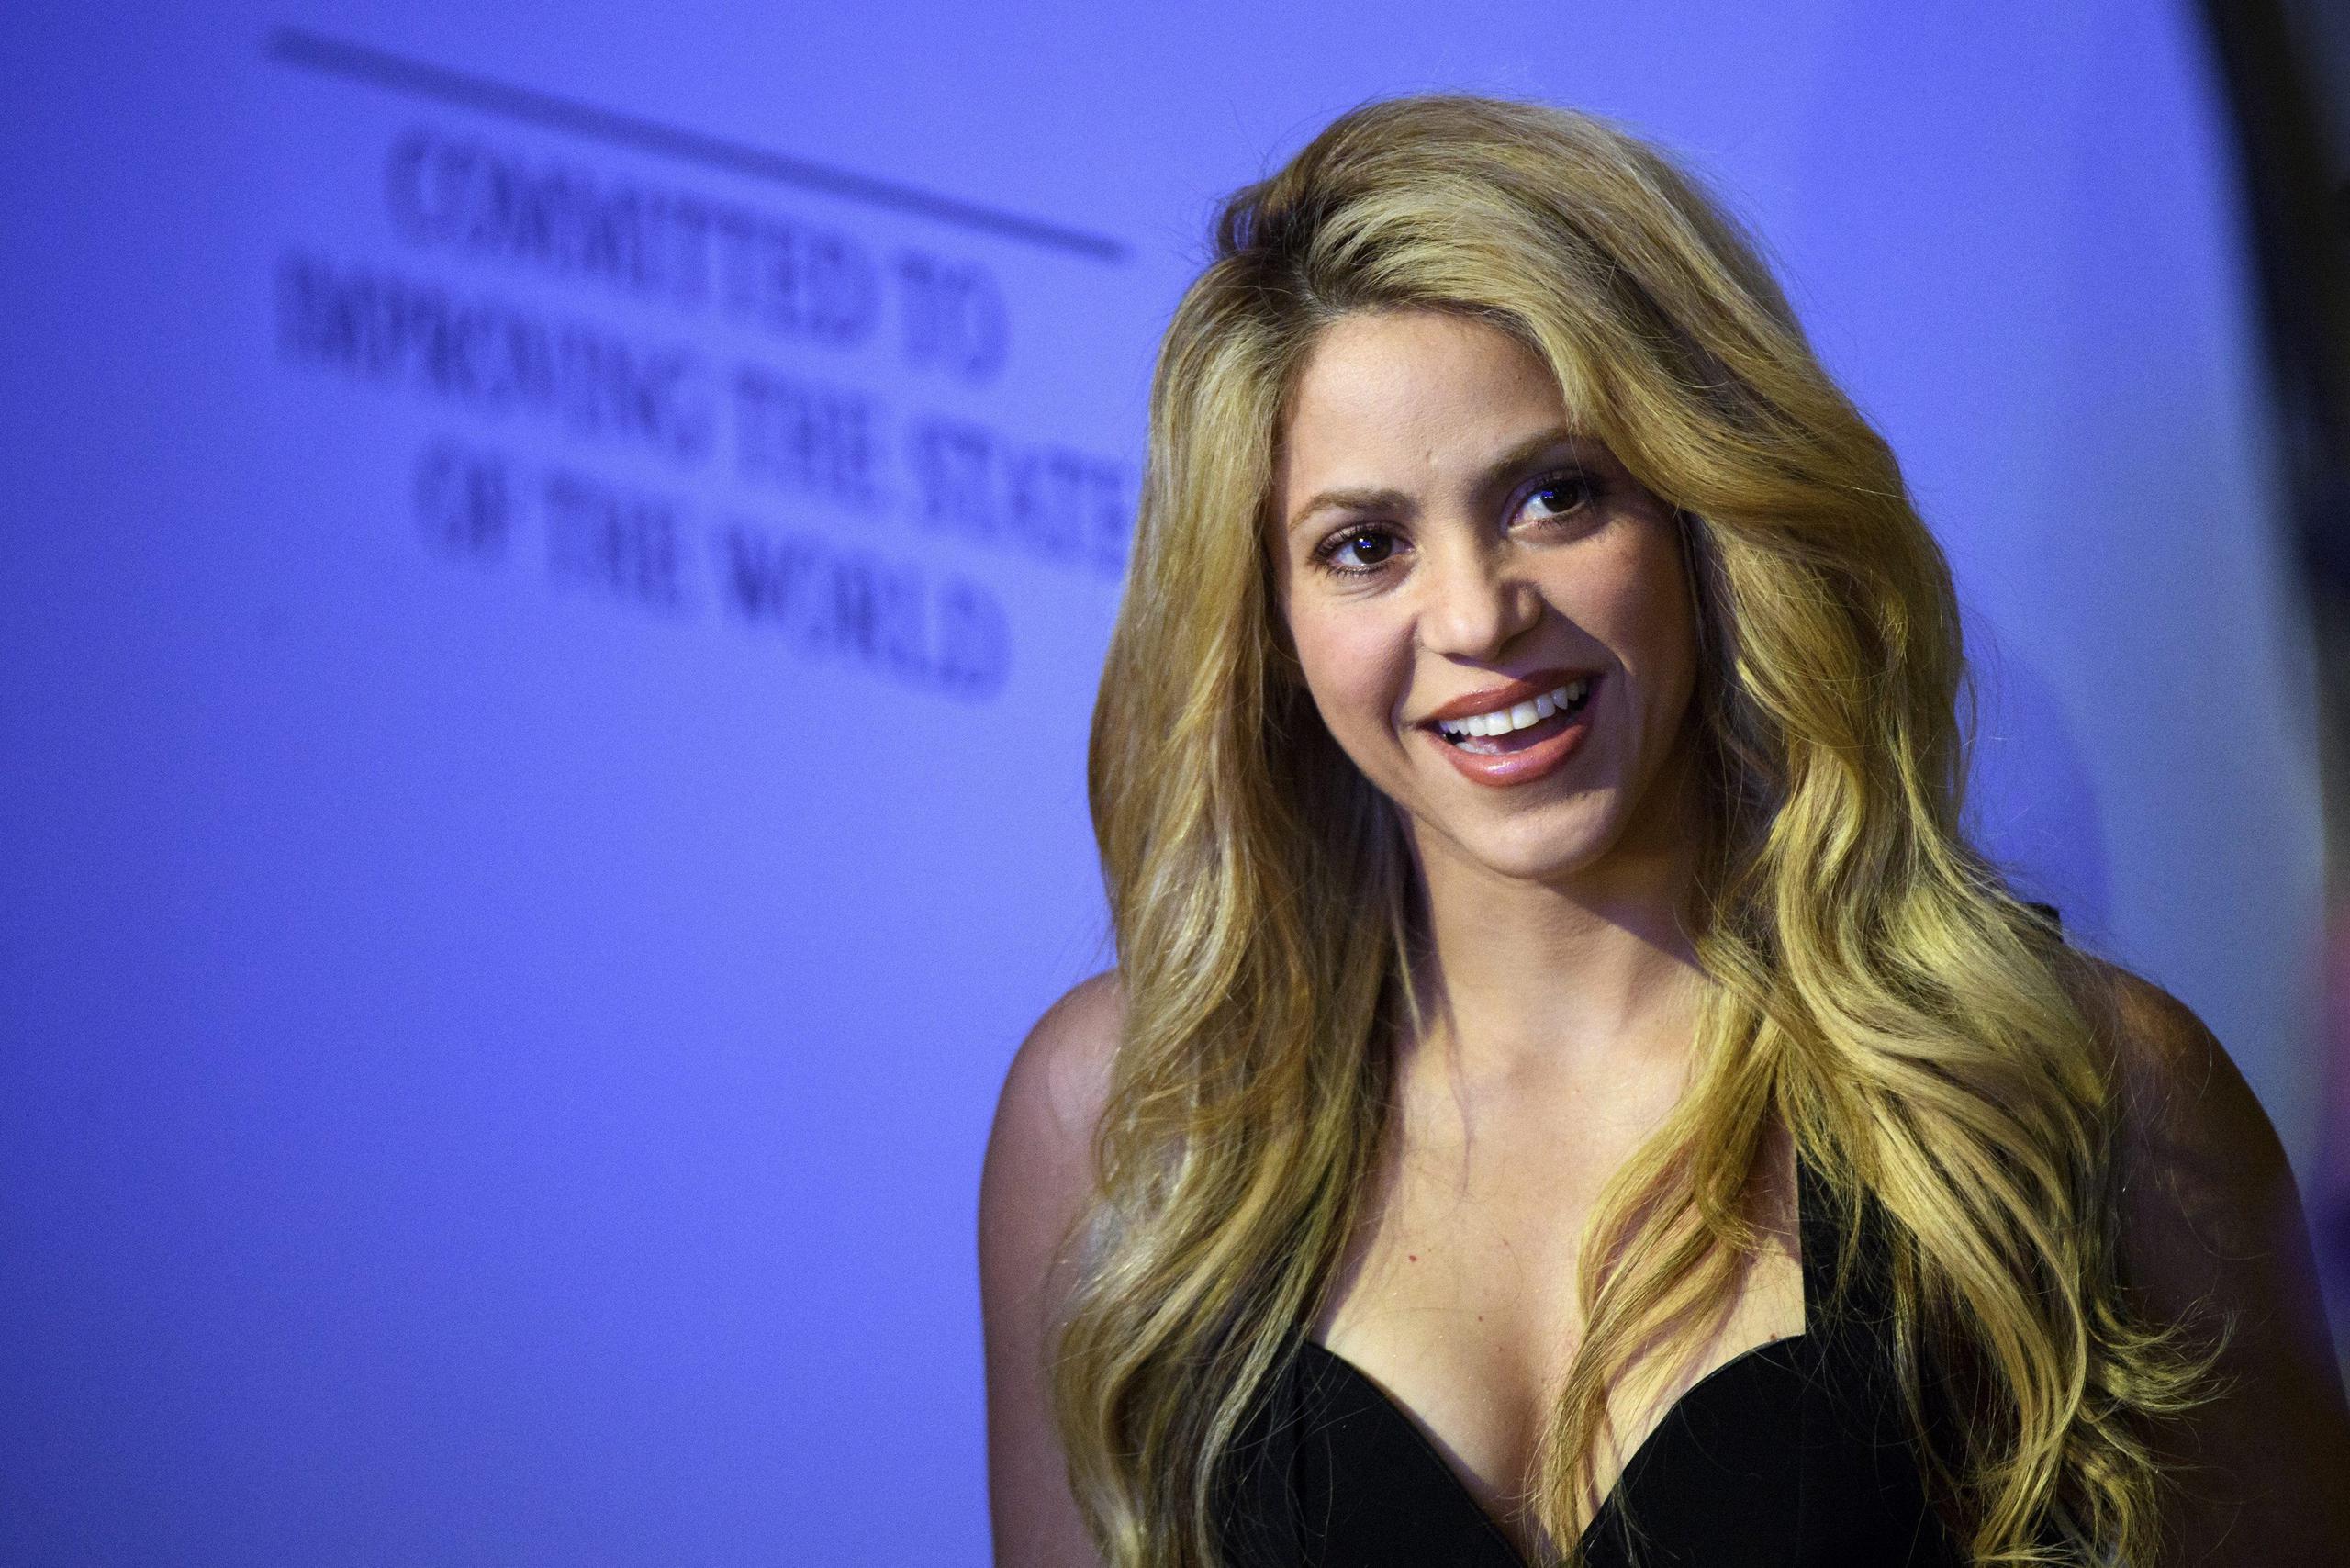 Los abogados de Shakira reprochan a Hacienda haber montado una “campaña mediática” con el único objetivo de “forzar” a la cantante para que “a pesar de su inocencia, se declare culpable y llegue a una conformidad con las acusaciones”.